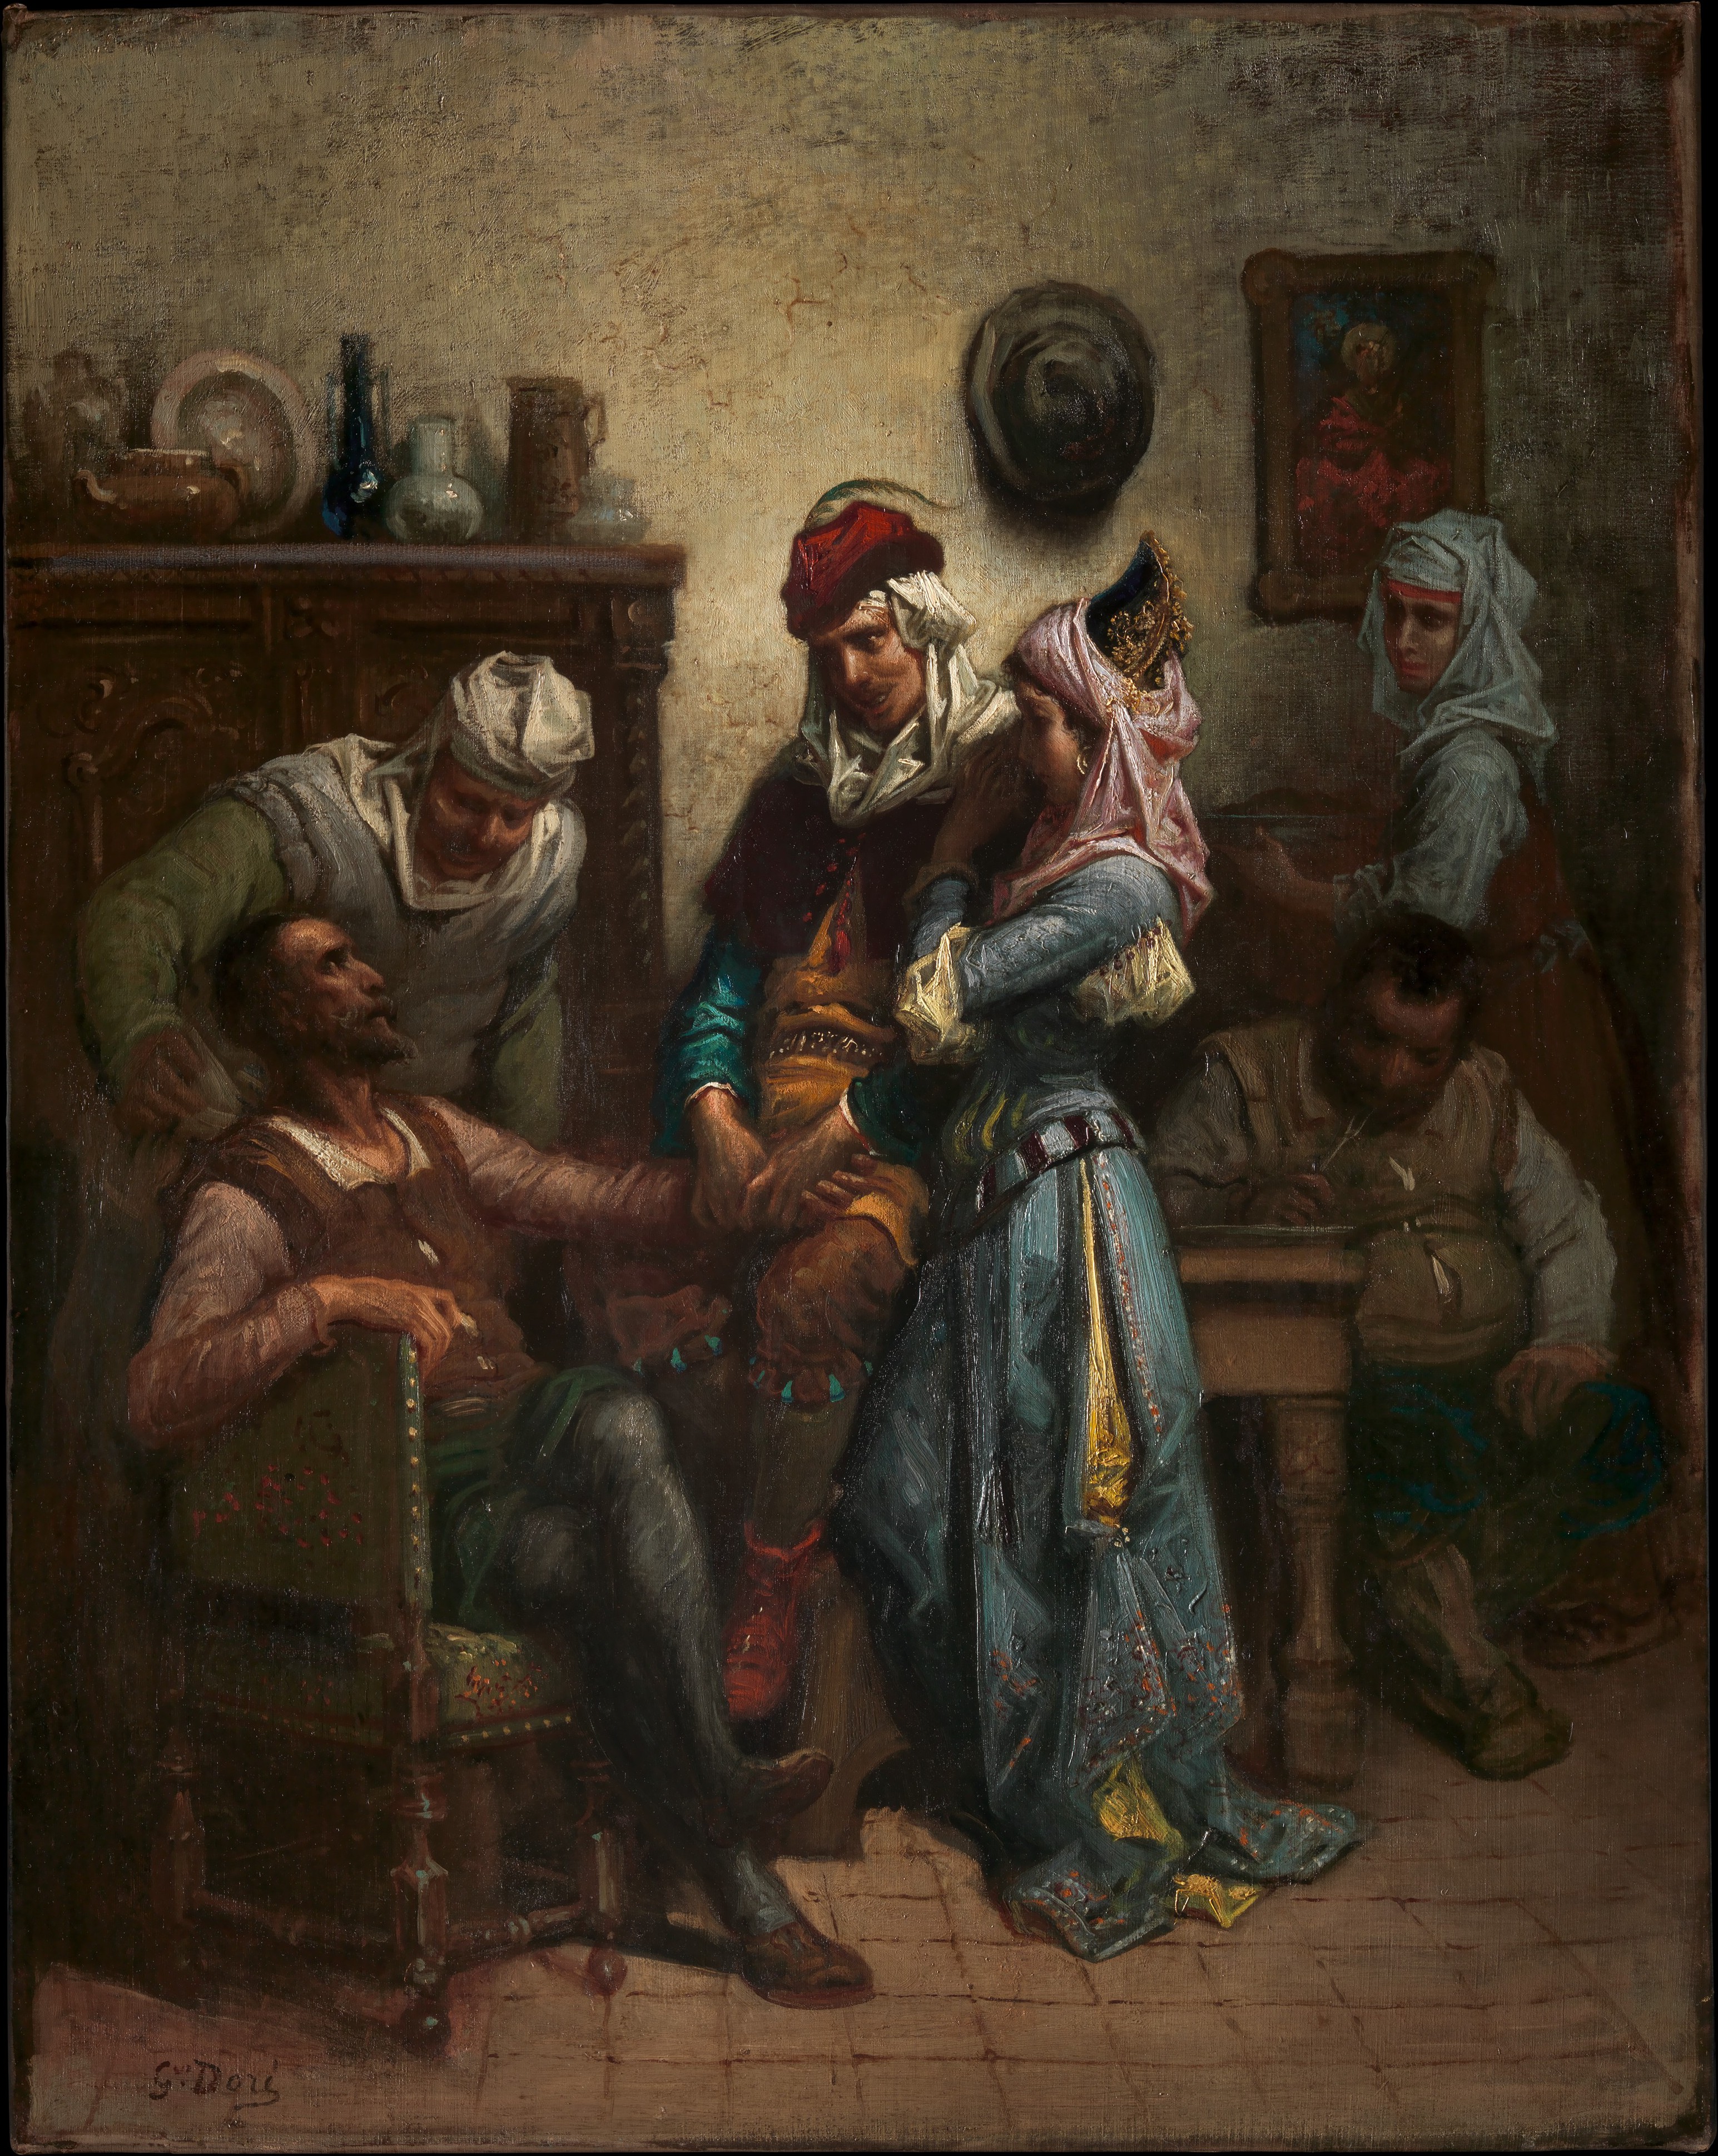 Gustave Doré (1832–1883): Master of Imagination